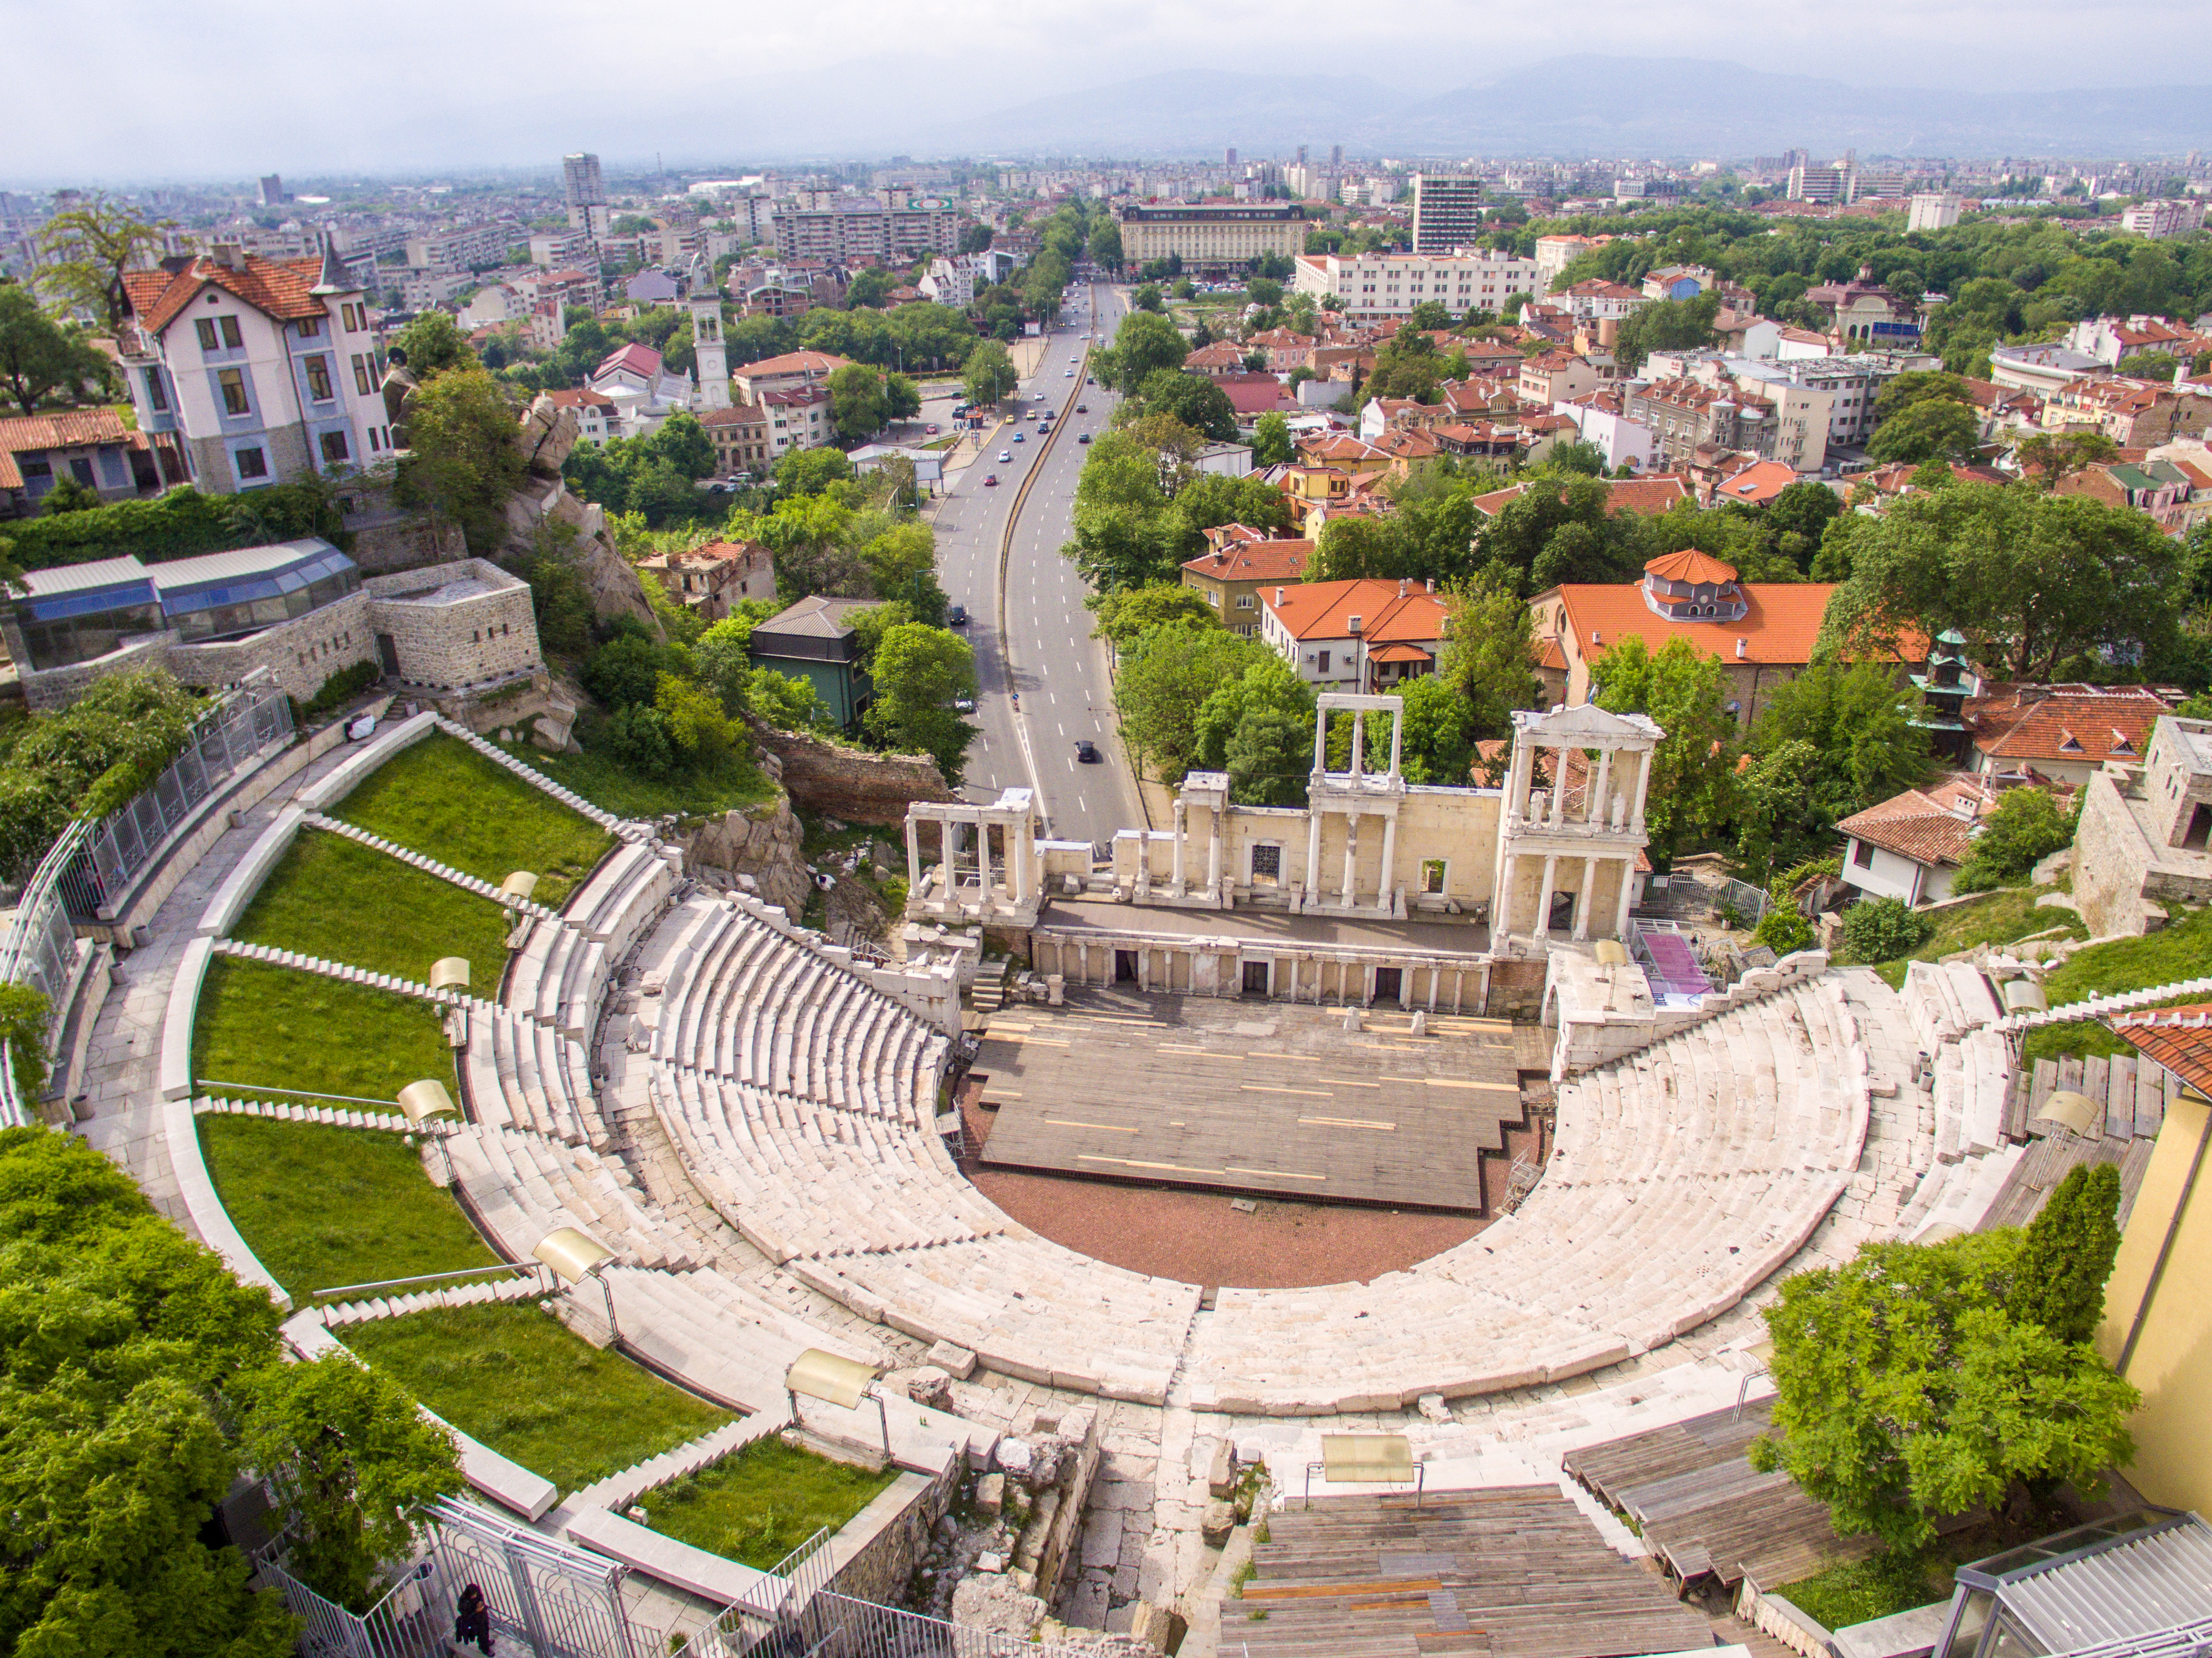 Пловдив, город в Болгарии, ПМЖ которой могут получить иностранцы